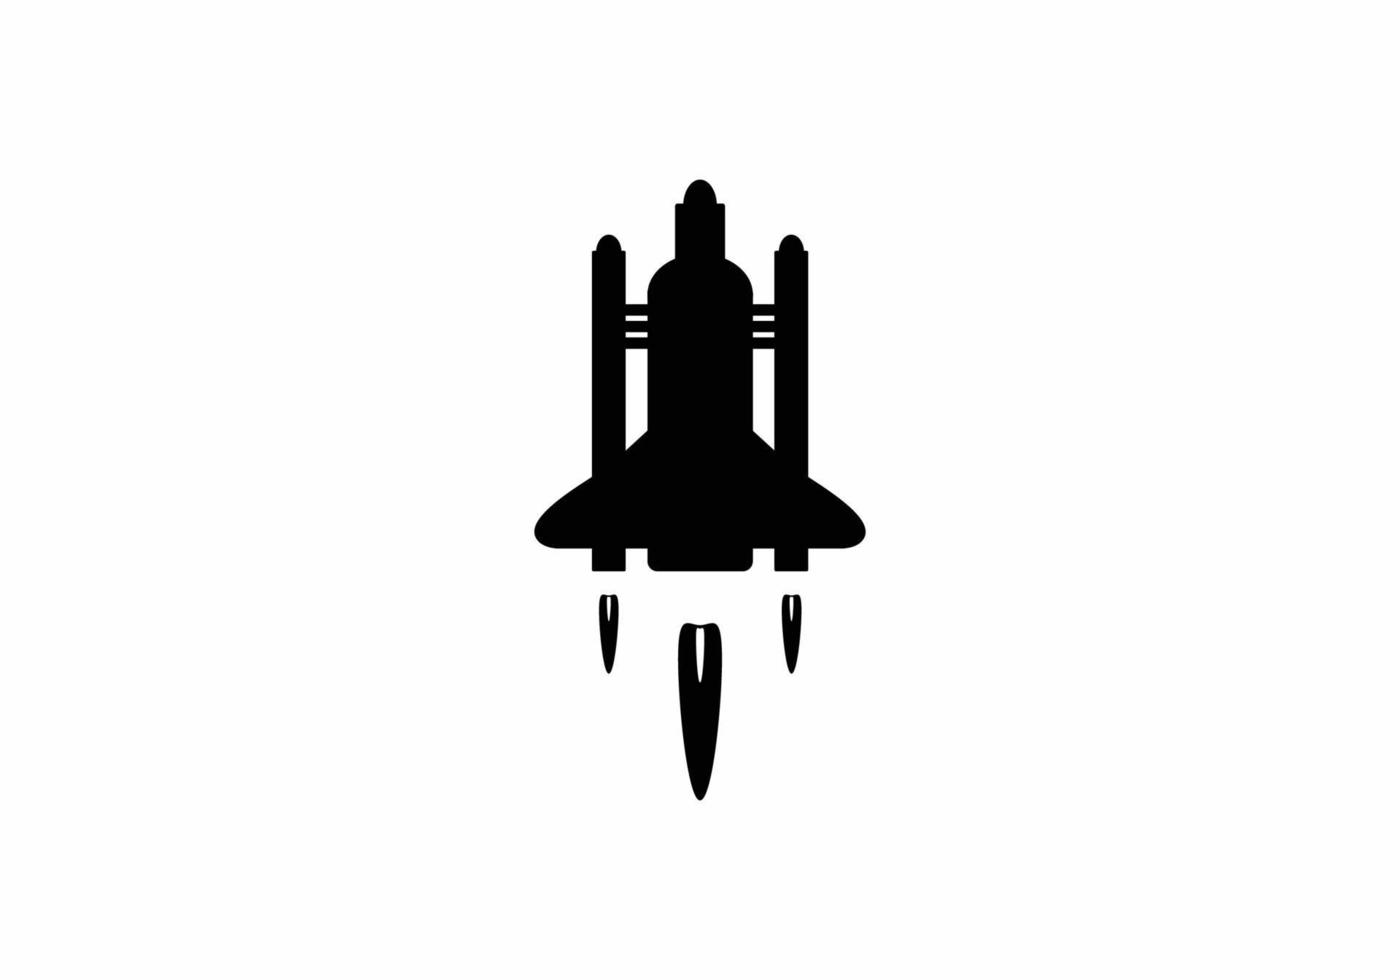 plat symboolpictogram met illustraties van raketontwerp vector